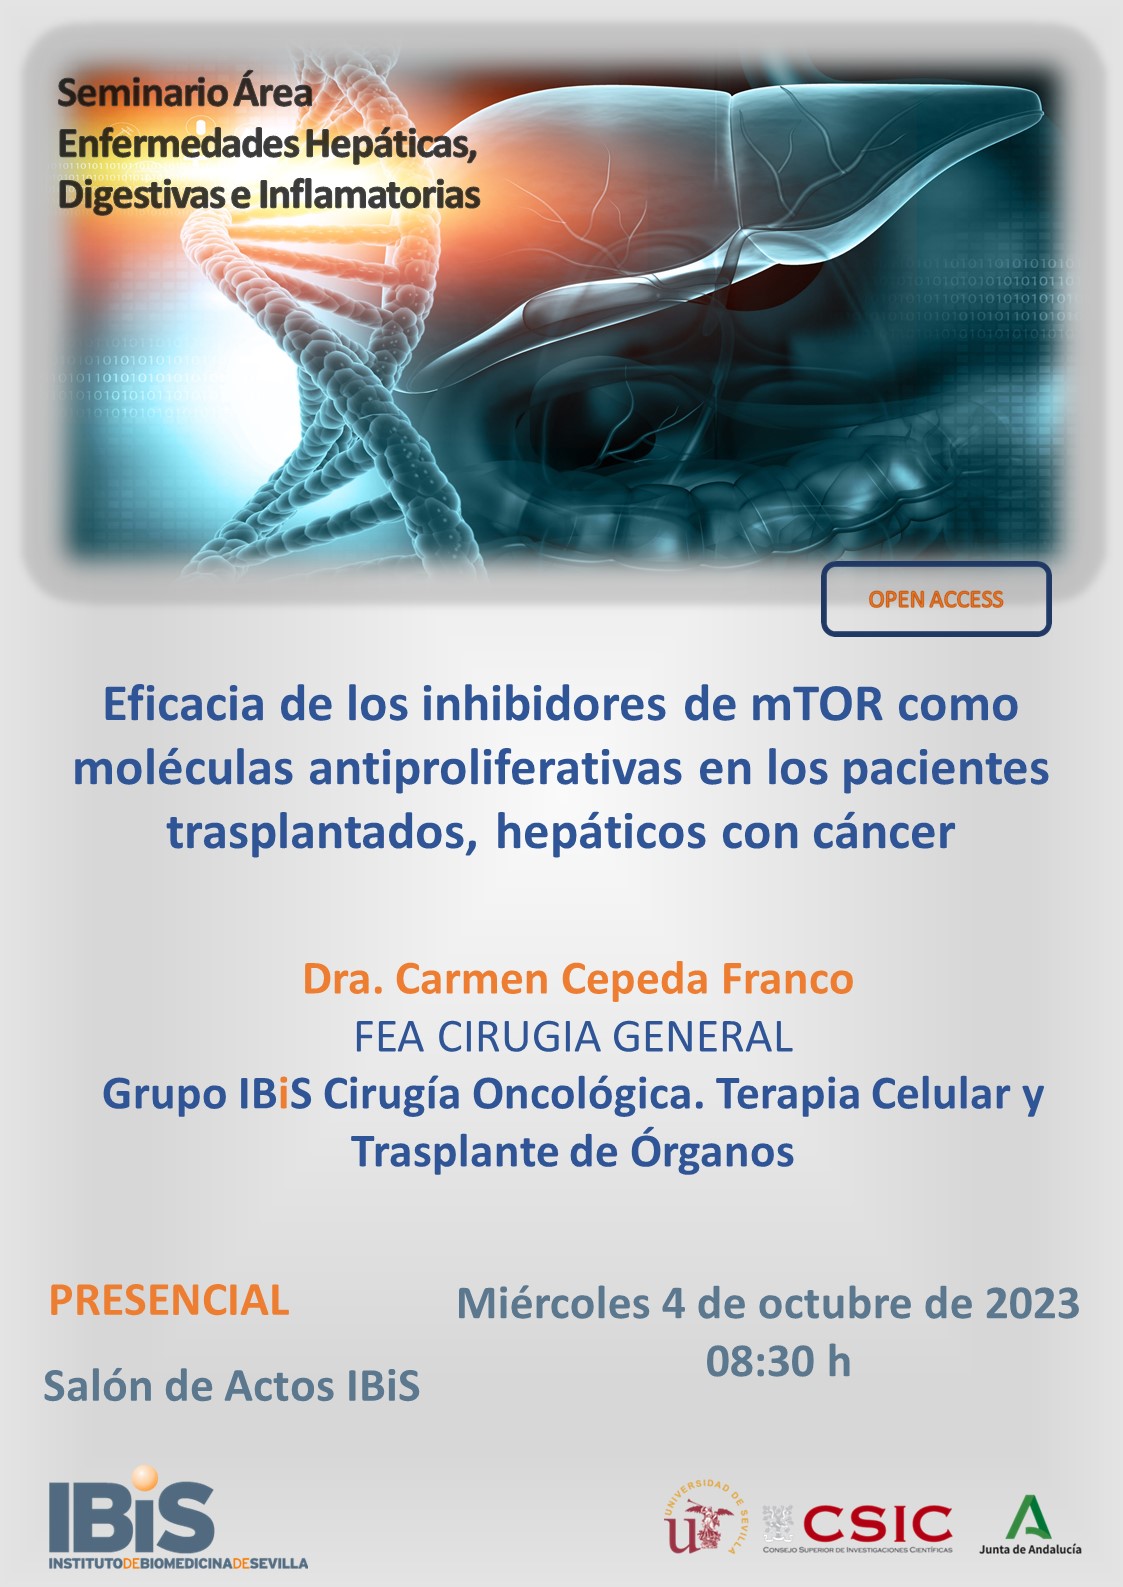 Poster: Eficacia de los inhibidores de mTOR como moléculas antiproliferativas en los pacientes trasplantados, hepáticos con cáncer